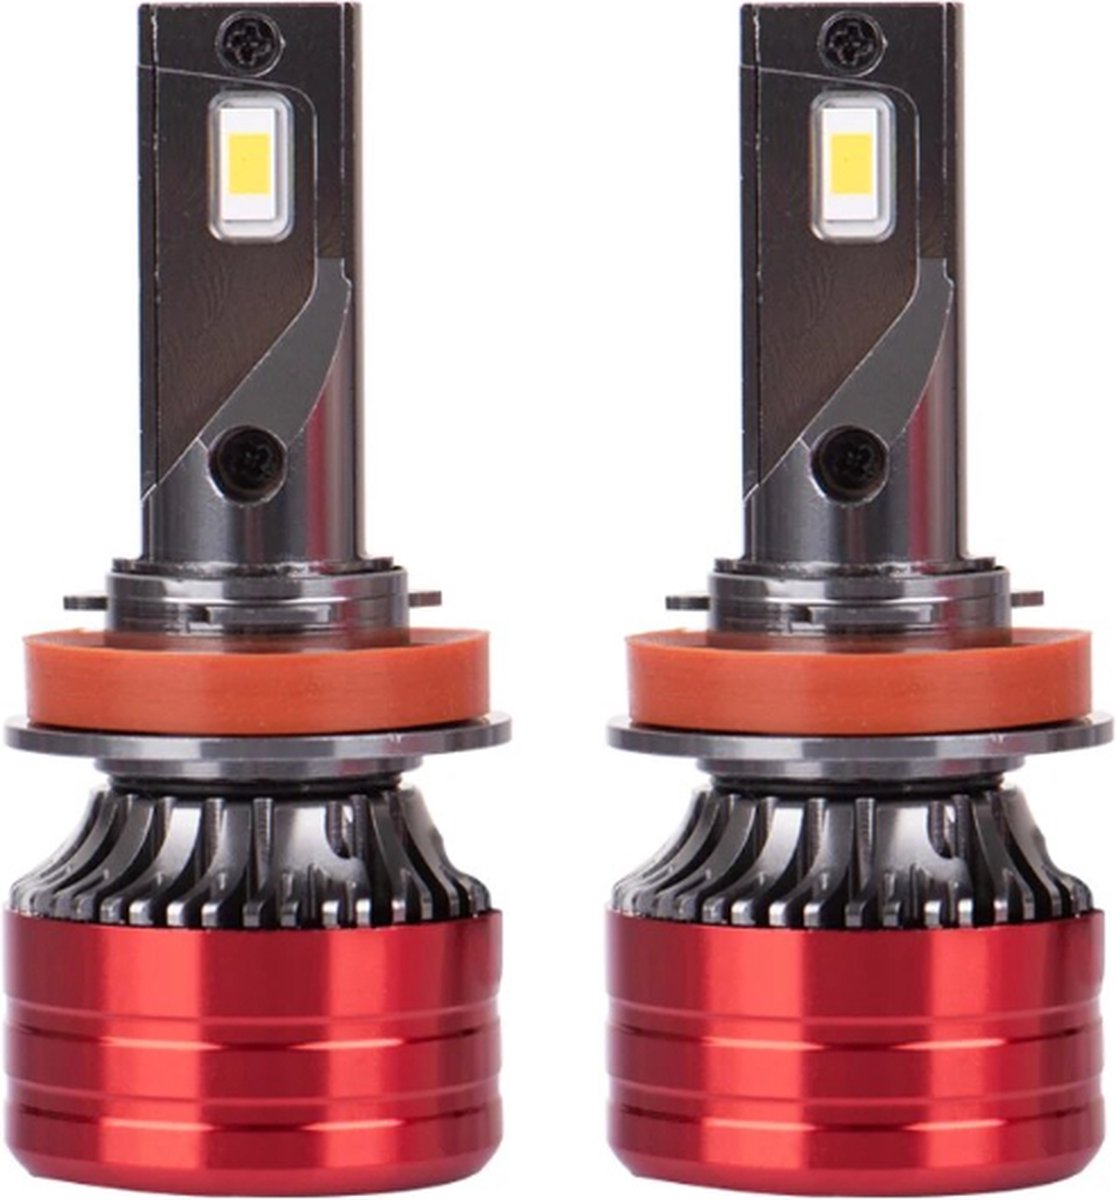 TLVX H8 Mini Turbo LED lampen 29.600 Lumen 6000k Helder Wit (set 2 stuks) CANBUS EMC adapter, Extra Fel, CSP LED CHIP 96 Watt Auto – Vrachtwagen - Scooter - Motor - Dimlicht - Grootlicht – Mistlicht -Koplampen - Autolamp - Autolampen 12V - 24V